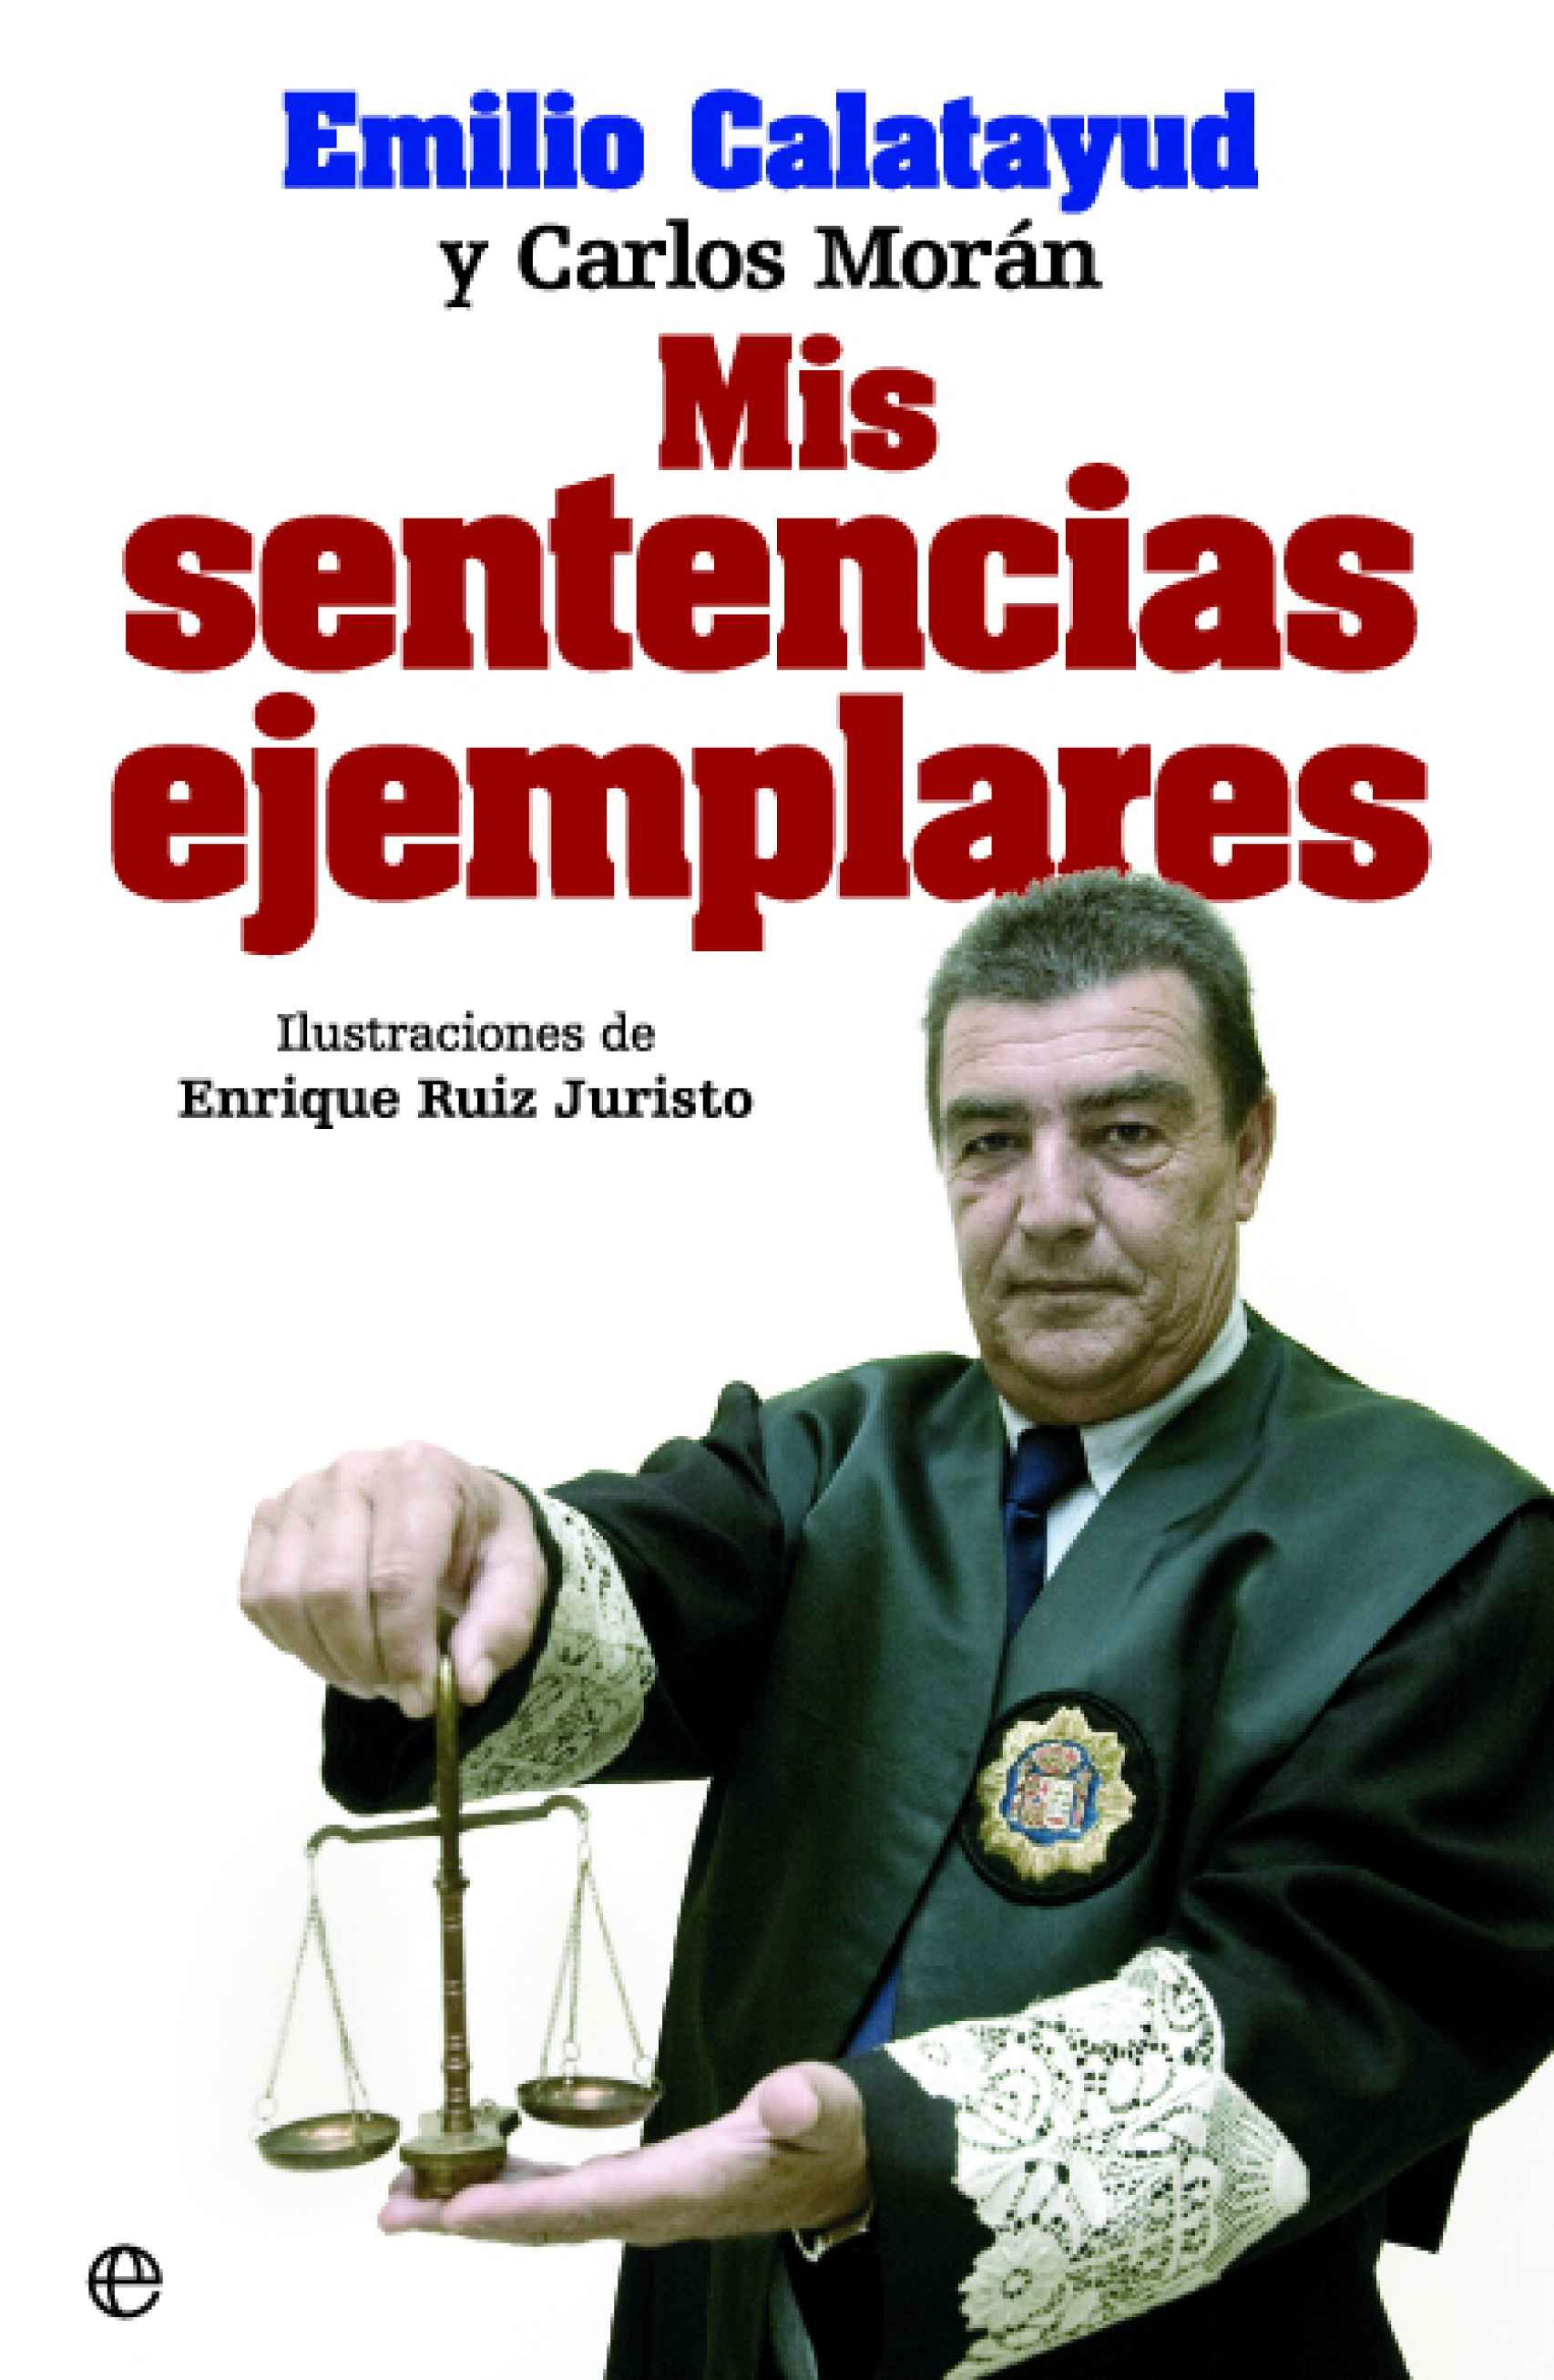 Portada del libro 'Mis sentencias ejemplares', de Emilio Calatayud.